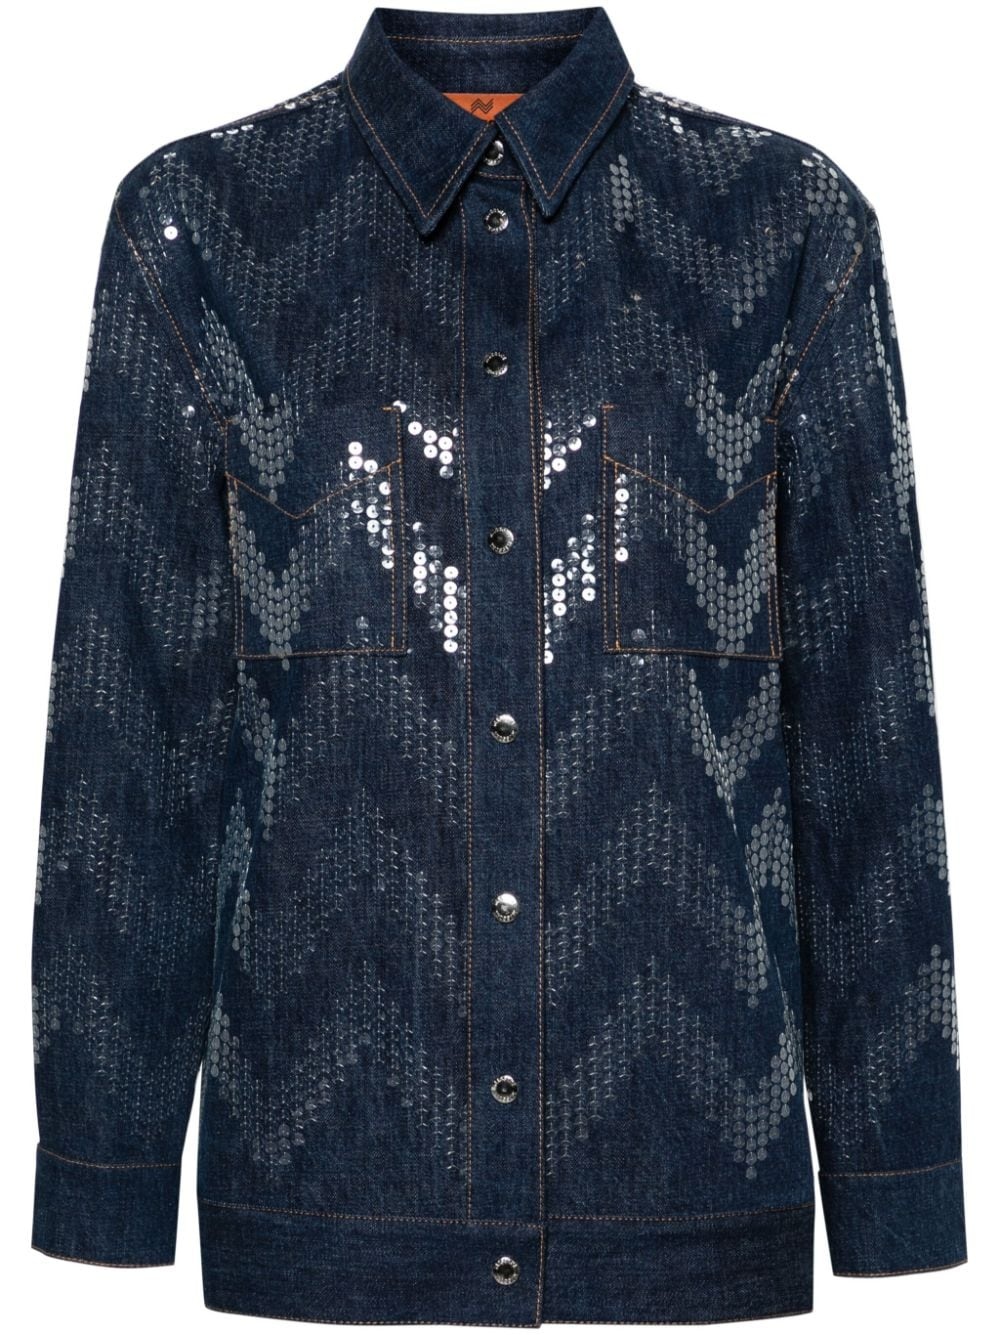 sequin-embellished denim jacket - 1